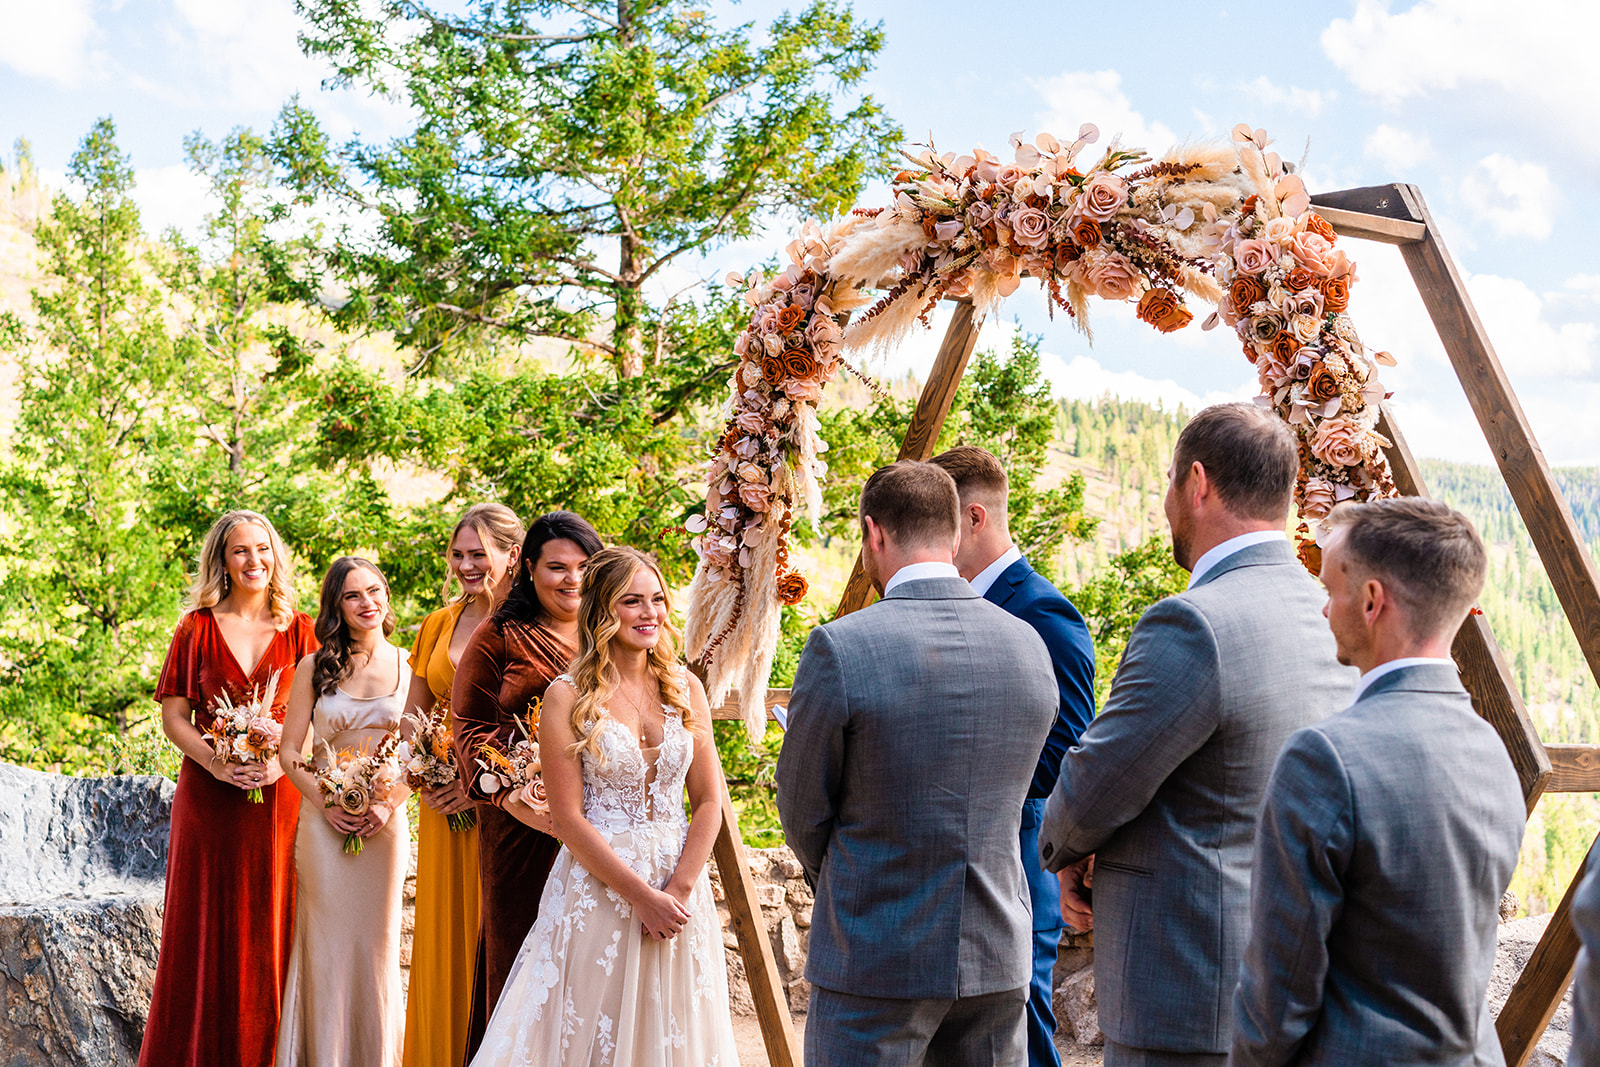 Intimate Outdoor Wedding Ceremony for a Colorado Micro Wedding